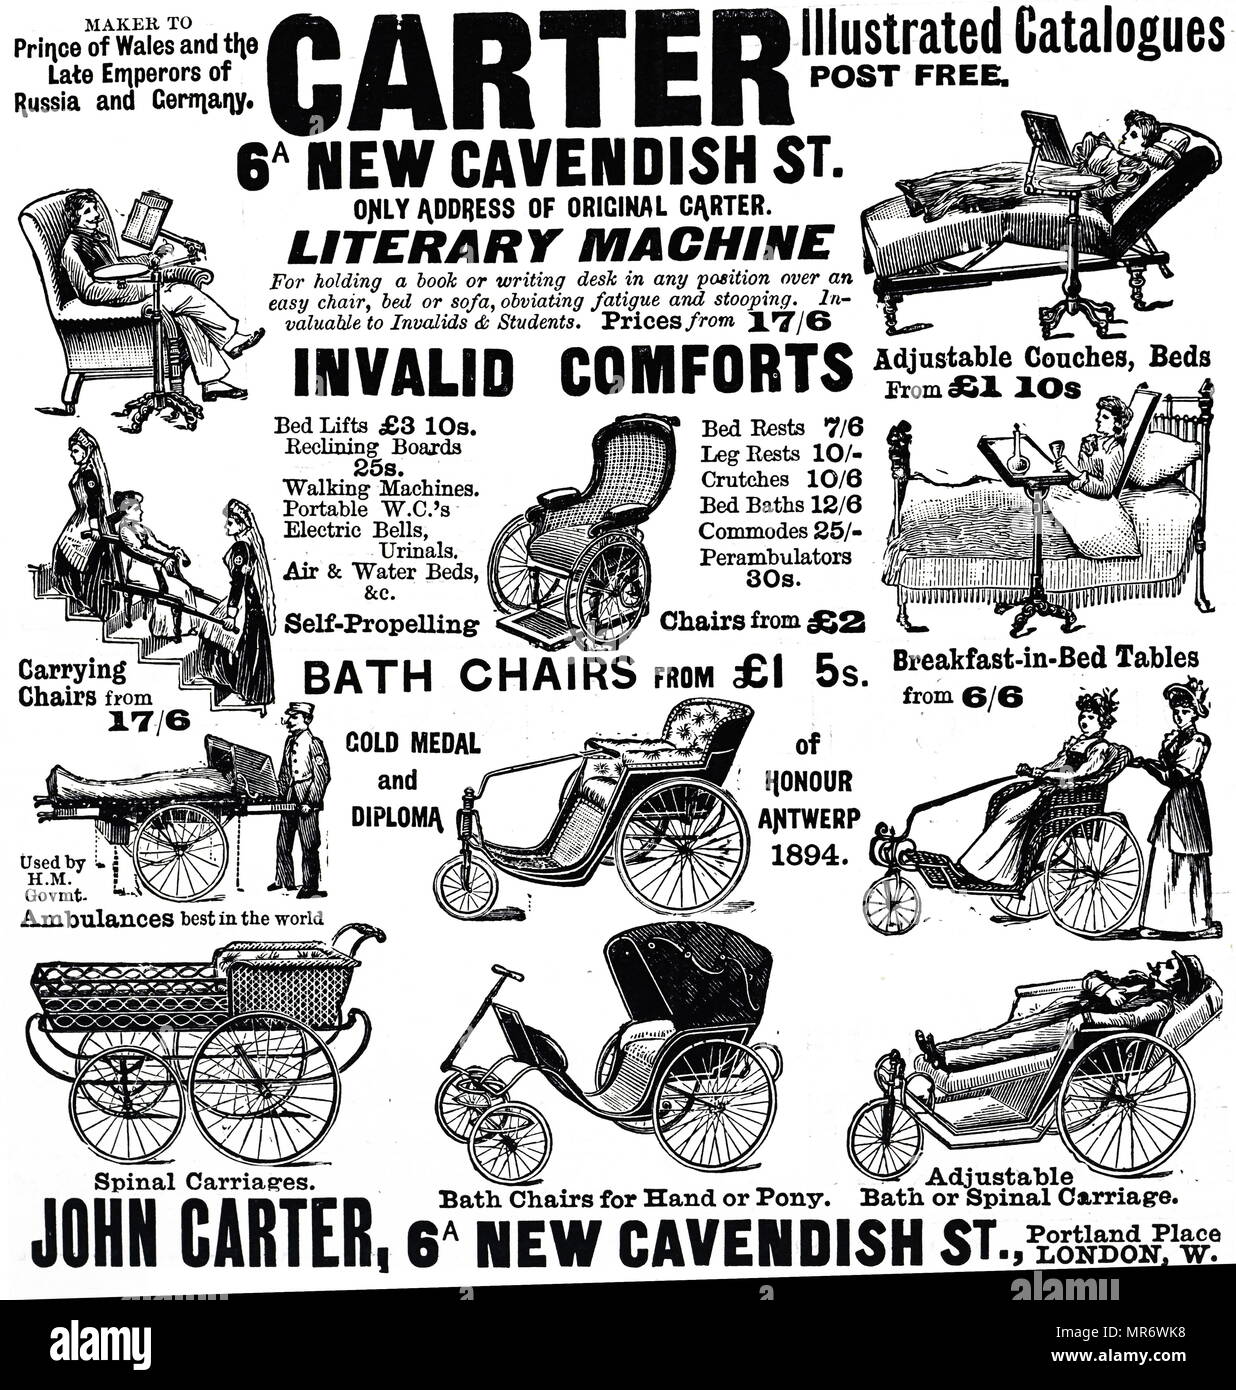 Le Carter catalogue illustré pour le confort non valide. En date du 19e siècle Banque D'Images